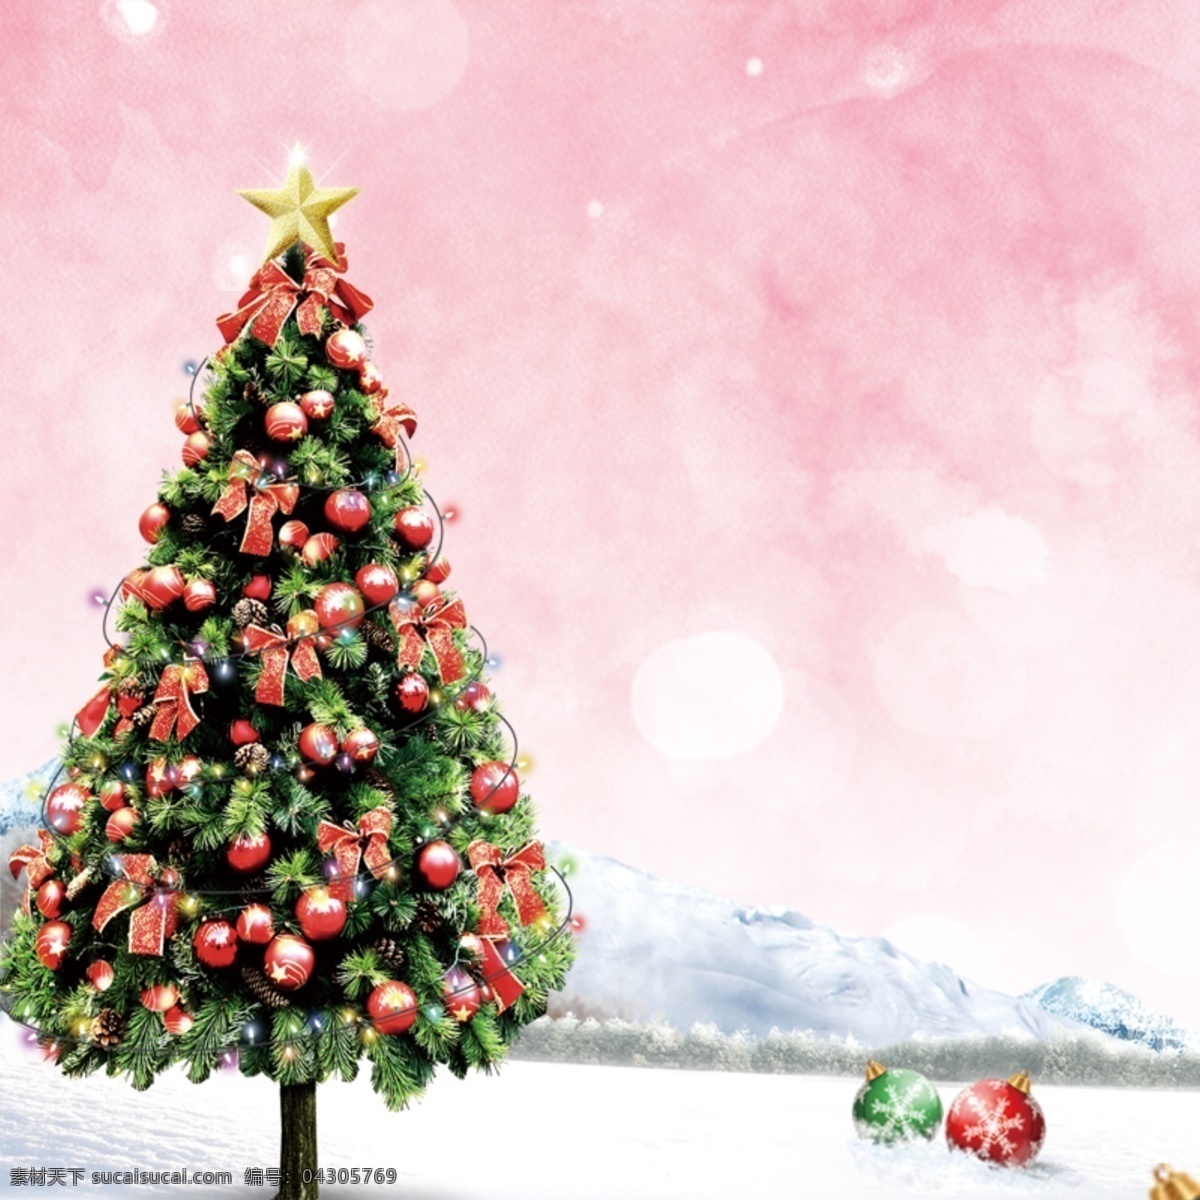 圣诞节 简约 温馨 背景 图 圣诞树 大气 浪漫 白色